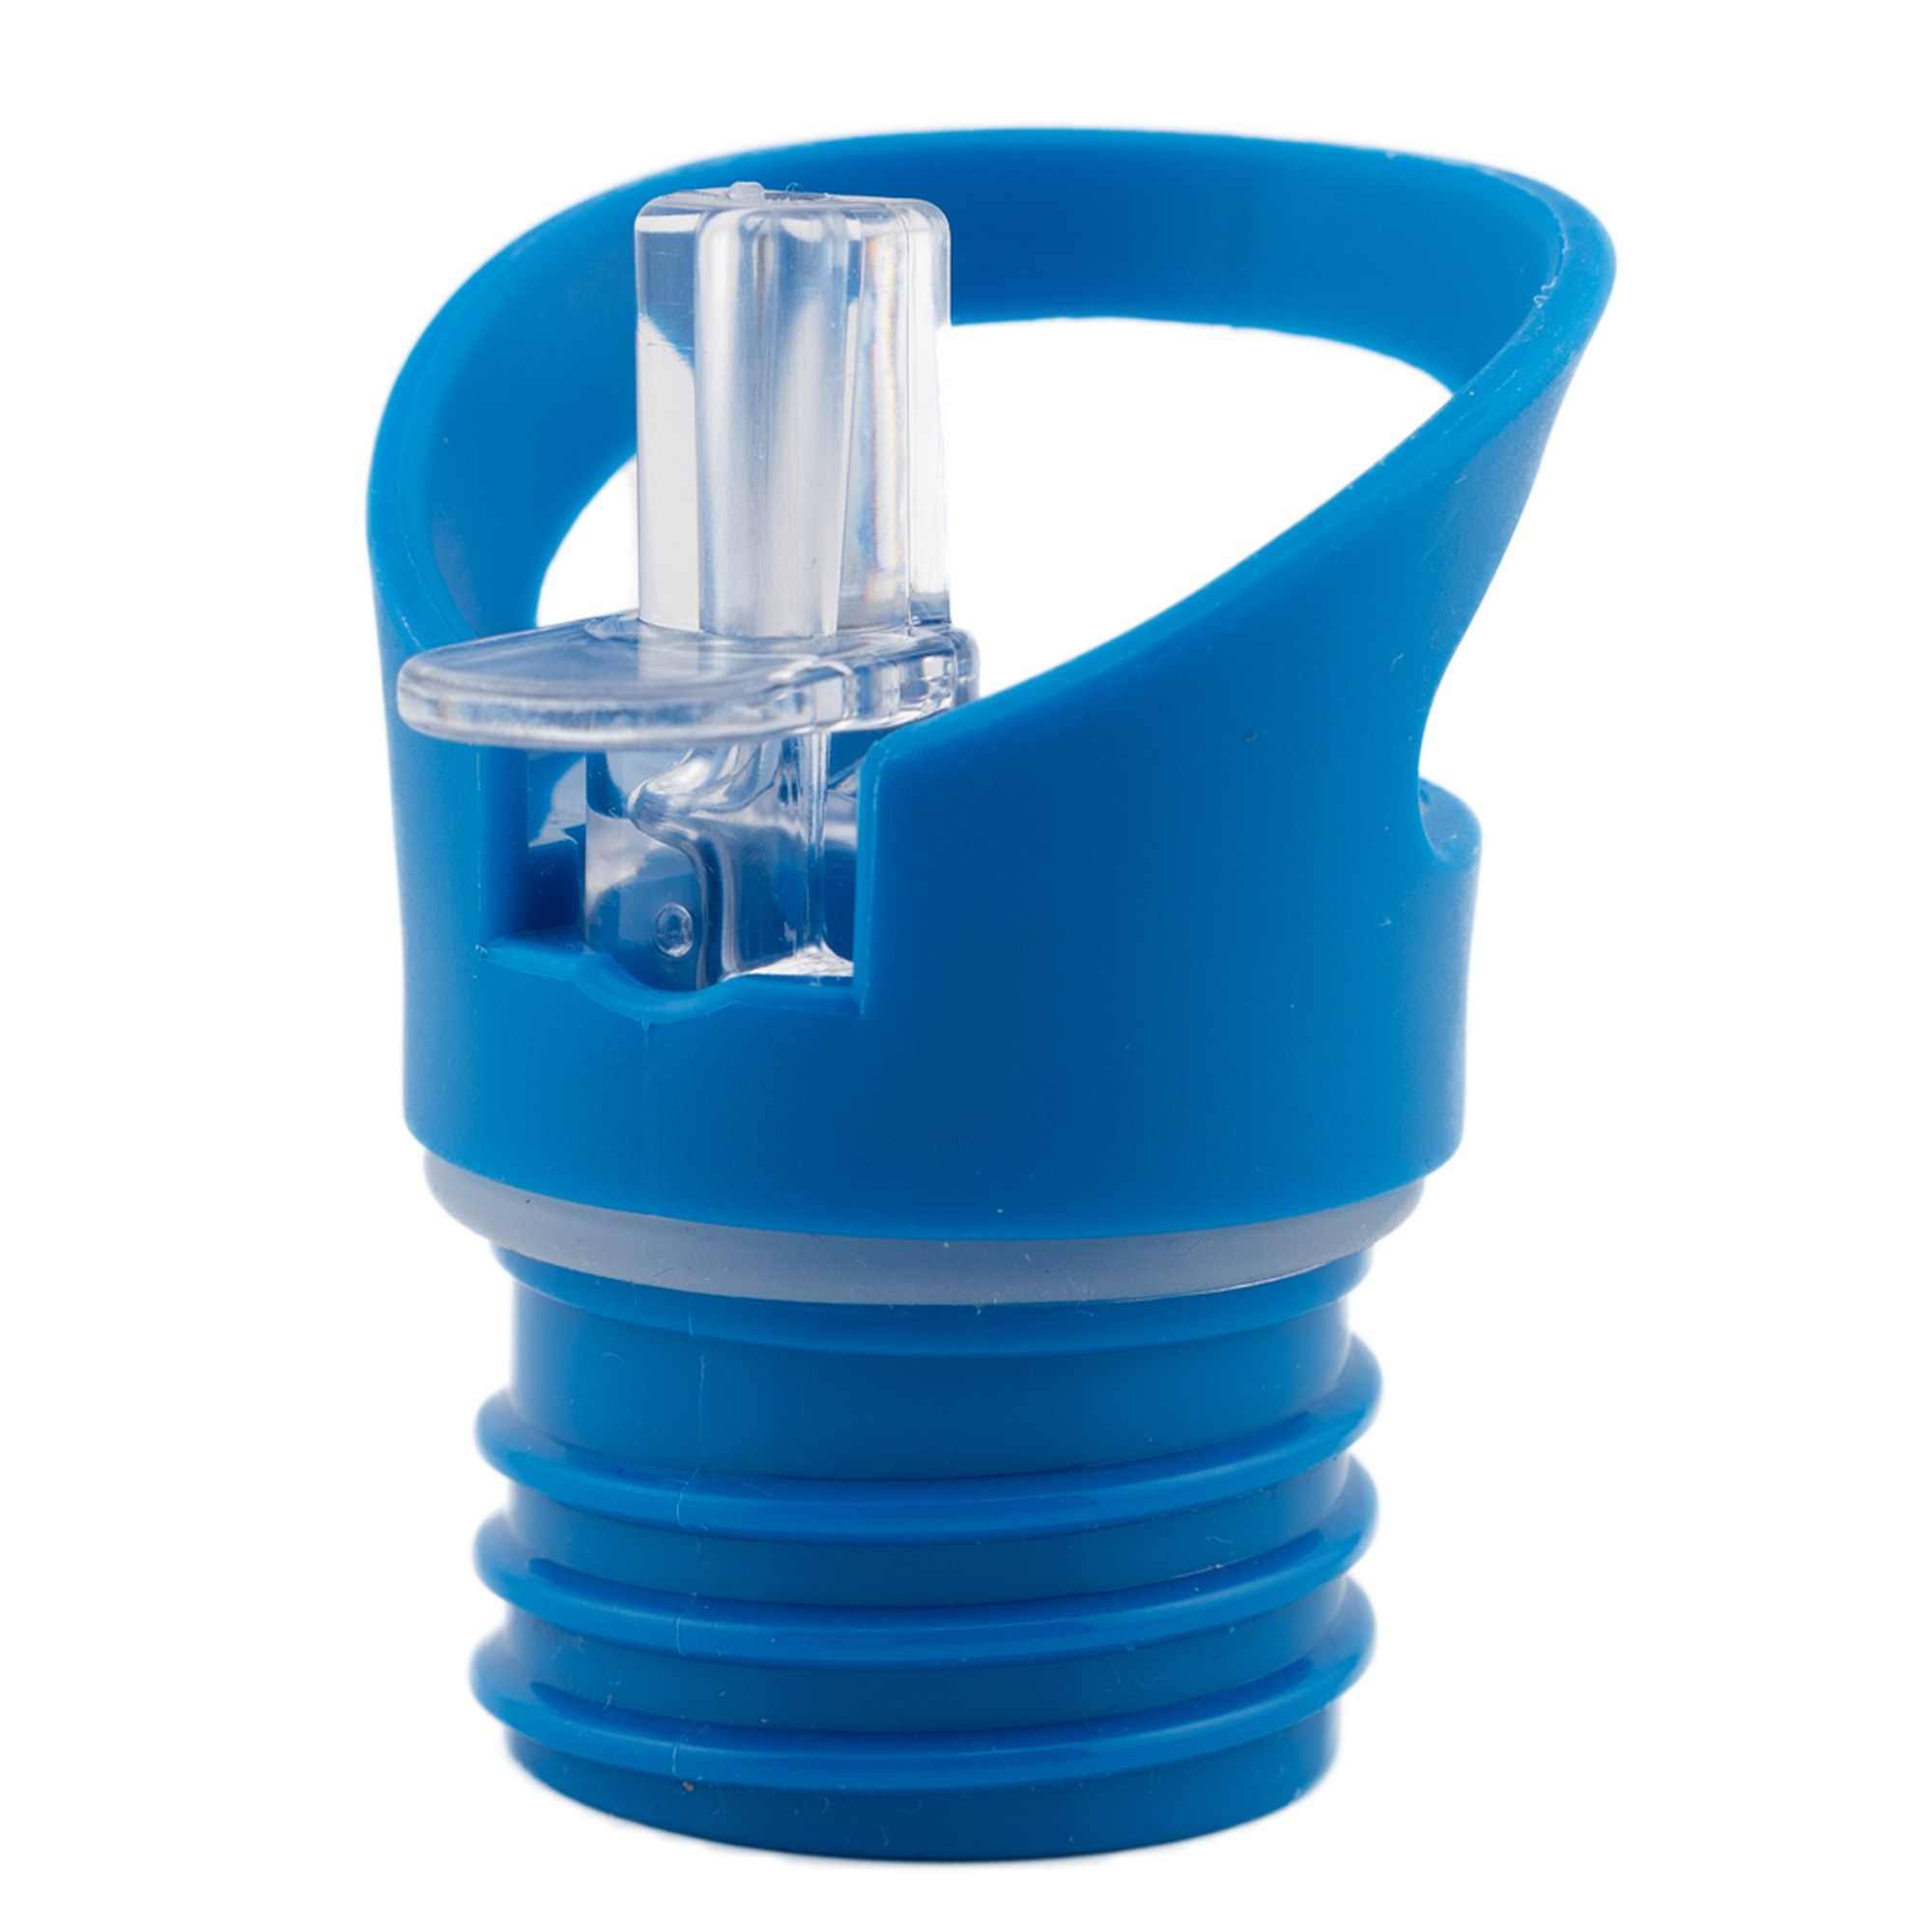 Trinkaufsatz mit Strohhalm für Edelstahltrinkflaschen - Durchmesser 4,5cm - dunkelblau